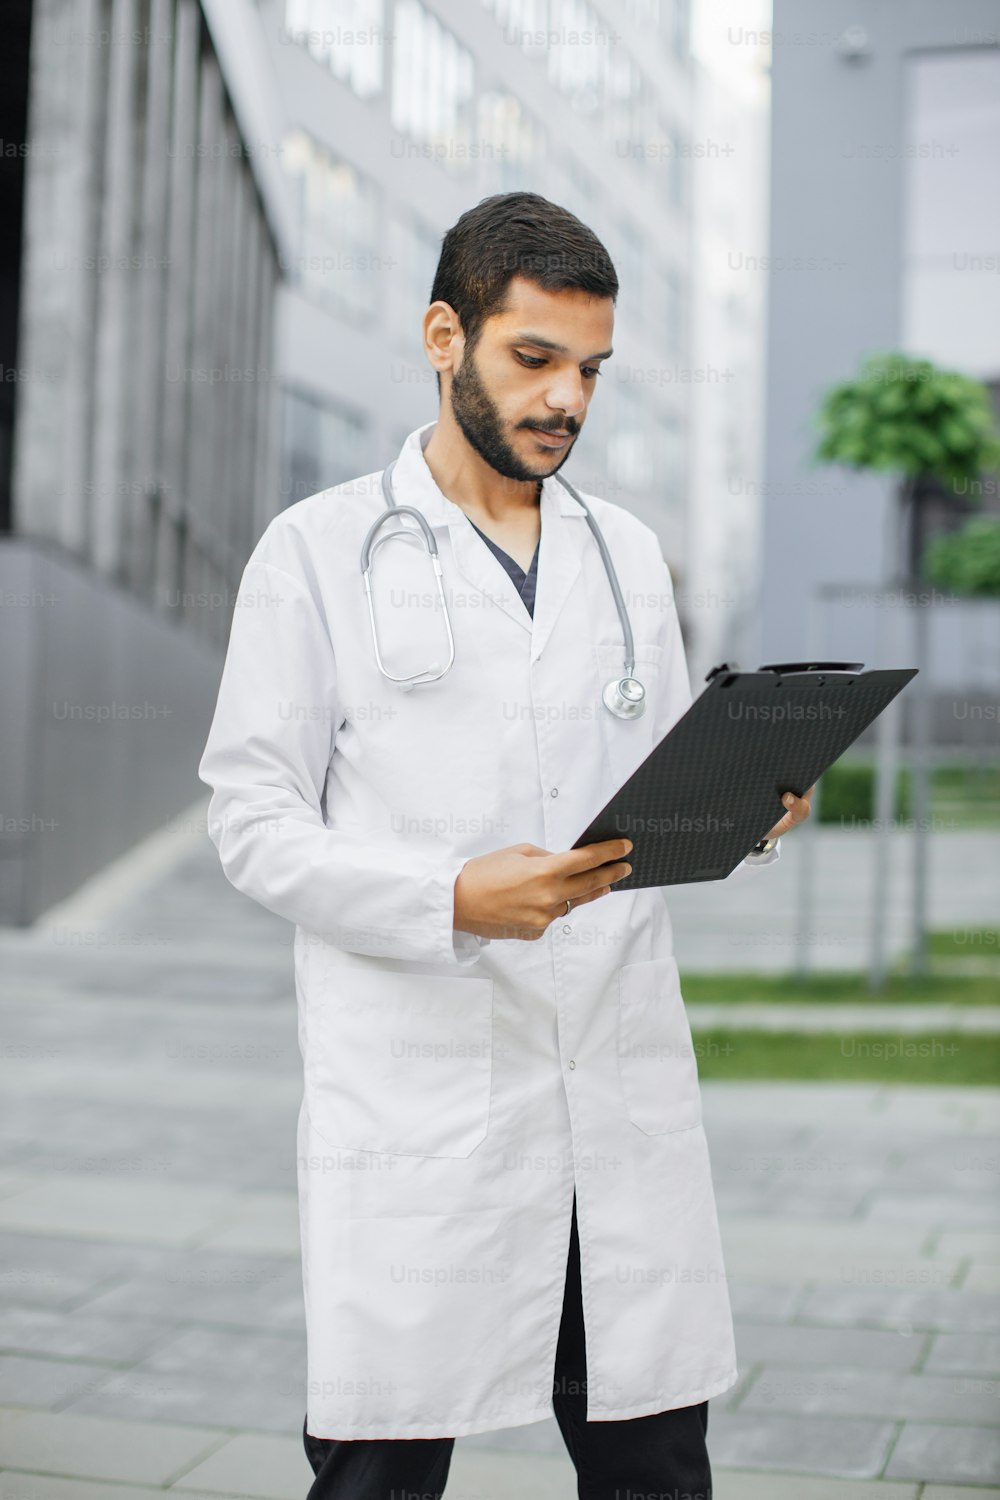 Porträt eines jungen, intelligenten, fokussierten männlichen medizinischen Praktikanten, der die Daten auf dem Ordner-Klemmbrett liest und vor dem modernen Krankenhausgebäude steht. Medizin-, Bildungs- und Gesundheitskonzept